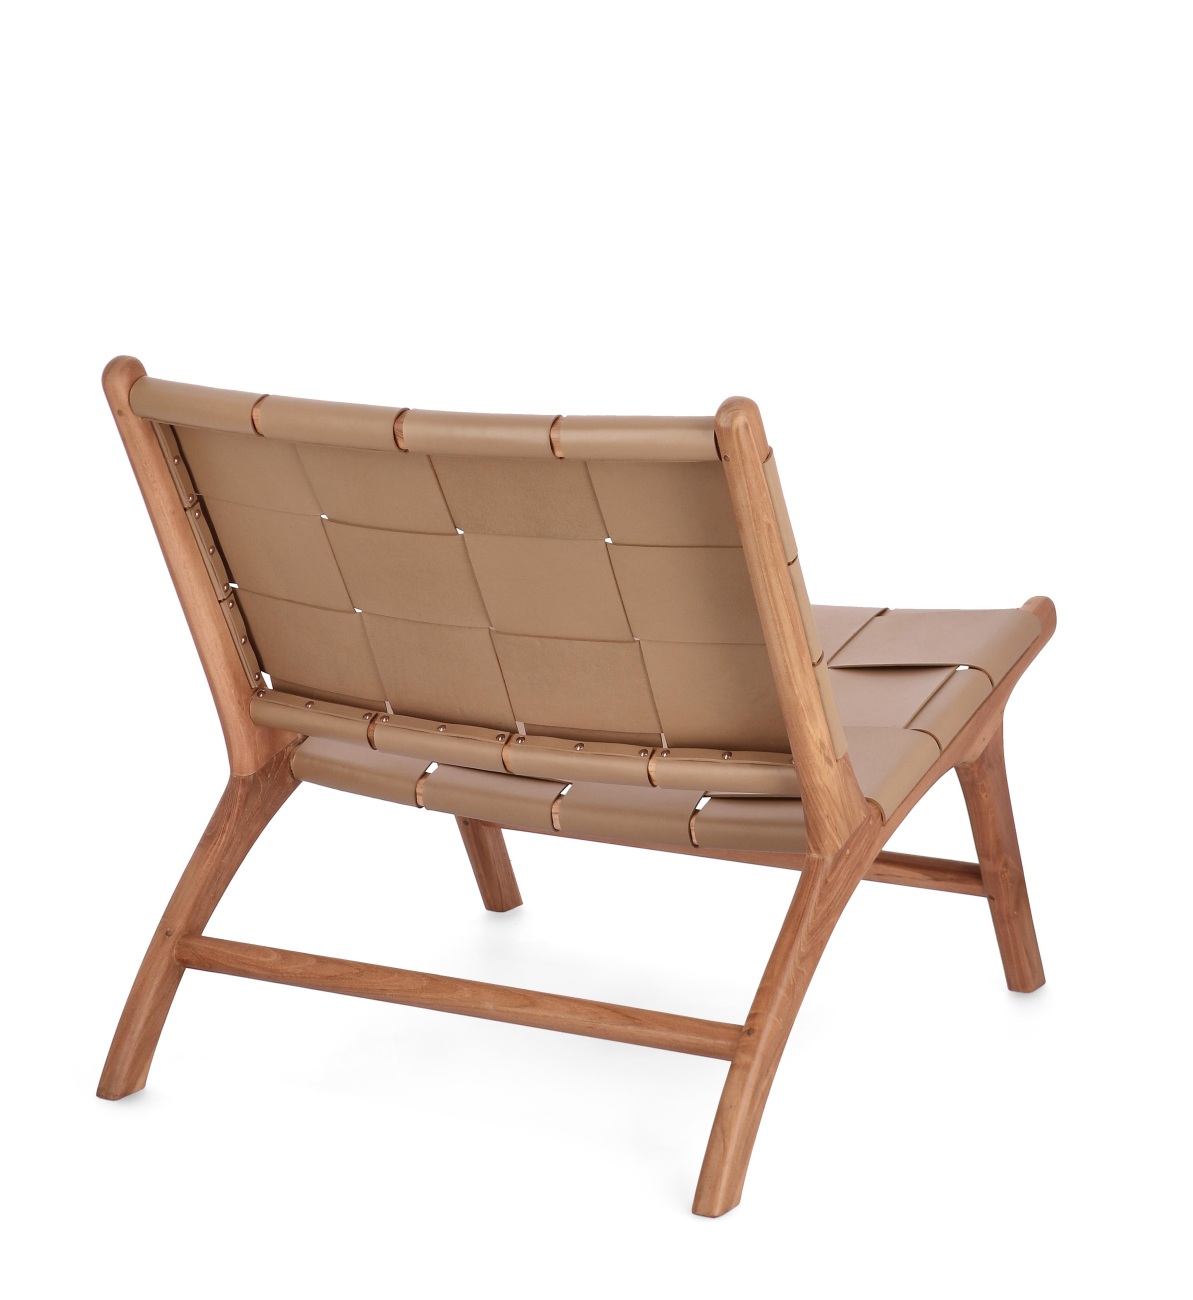 Der Sessel Joanna überzeugt mit seinem modernen Stil. Gefertigt wurde er aus Leder, welches einen Taupe Farbton besitzt. Das Gestell ist aus Teakholz und hat eine natürliche Farbe. Der Sessel besitzt eine Sitzhöhe von 39 cm.